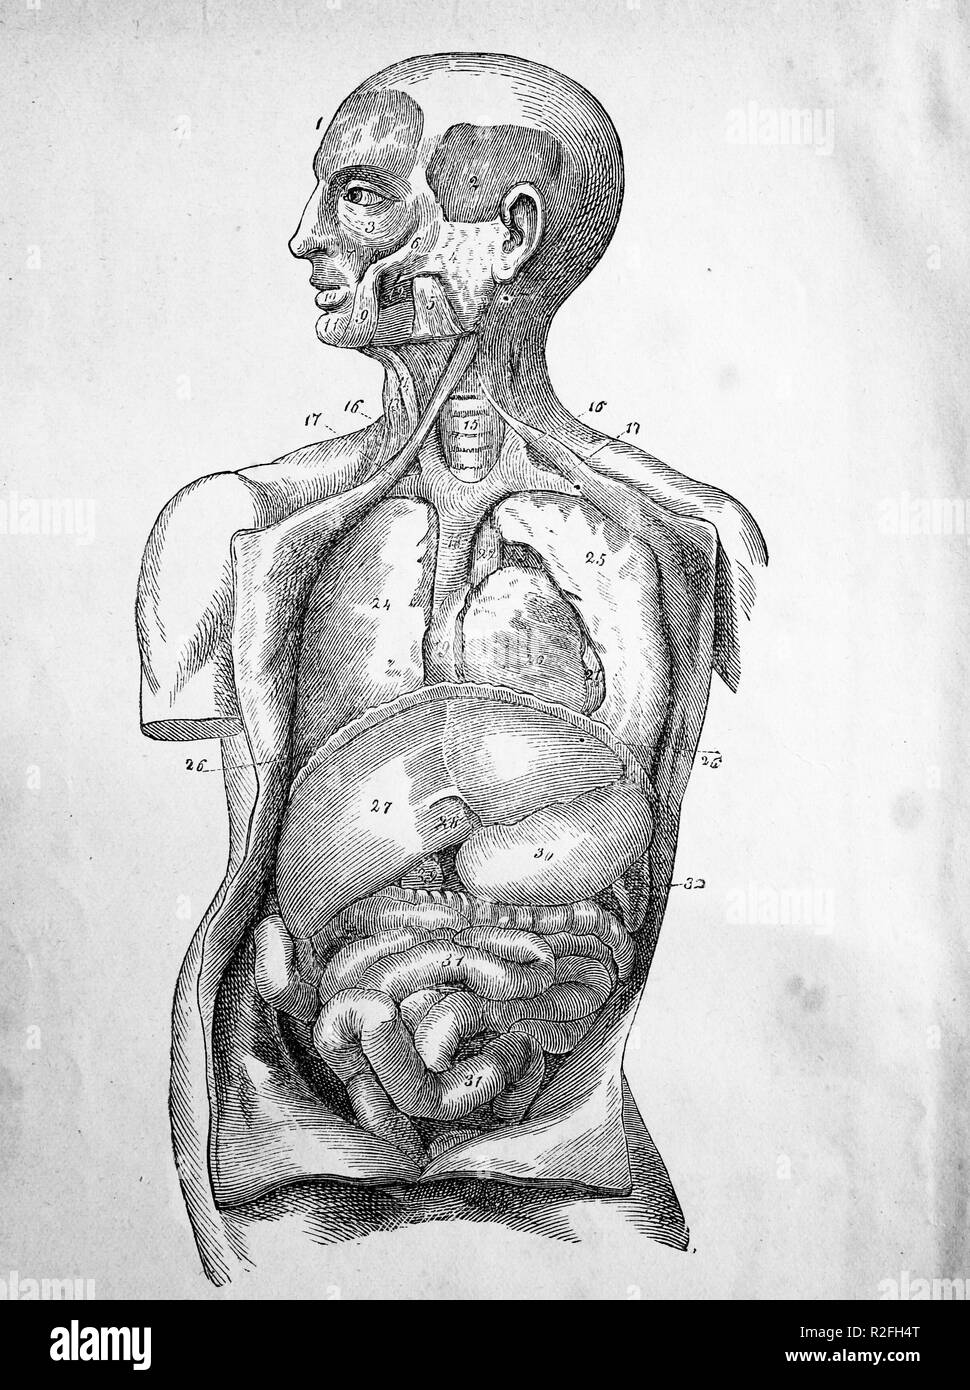 Digital riproduzione migliorata, Illustrazione medica di organi umani dal 1880, a partire da un originale di stampa dal XIX secolo Foto Stock